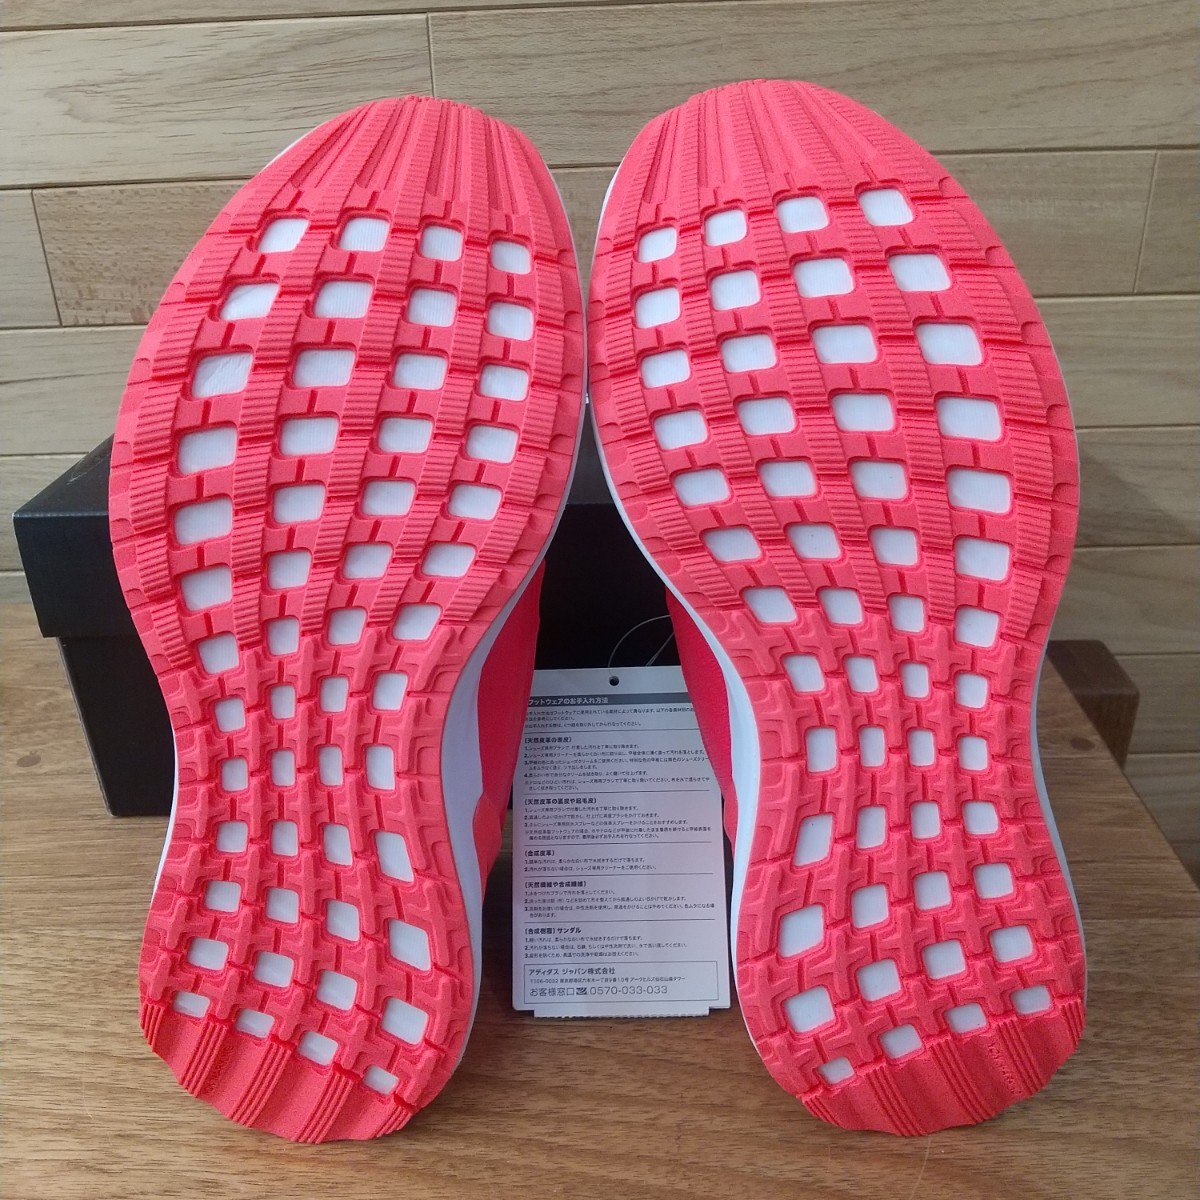  быстрое решение! 21cm новый товар стандартный товар Adidas Kids спортивные туфли lapida Ran adidas rapida run el K серый / розовый Junior 